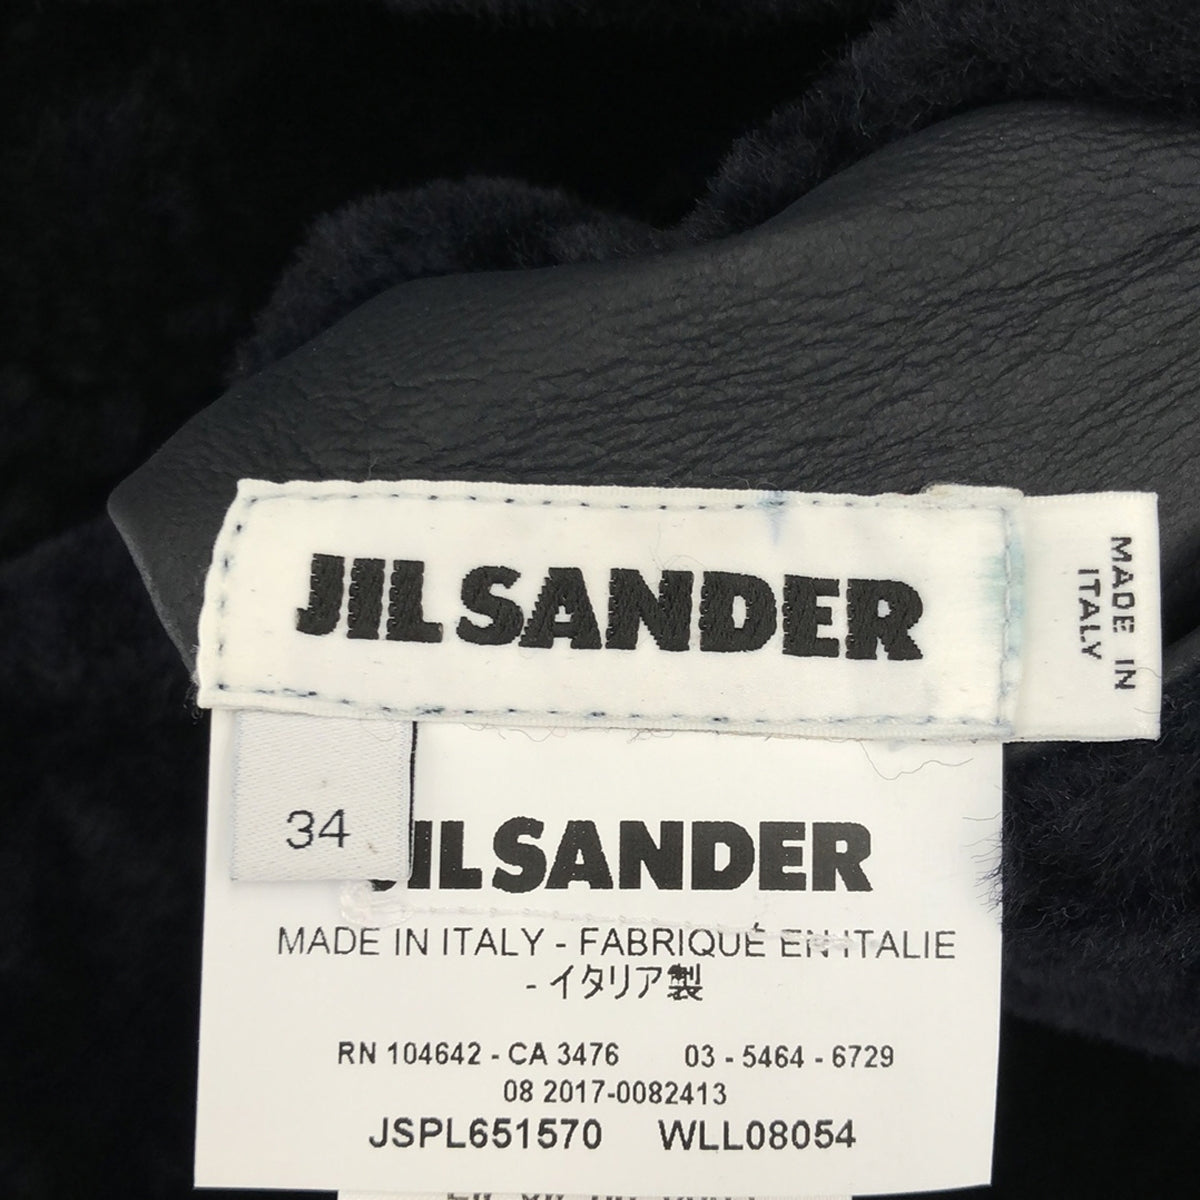 JIL SANDER / ジルサンダー | ムートン ノーカラー リバーシブルジャケット | 34 | レディース